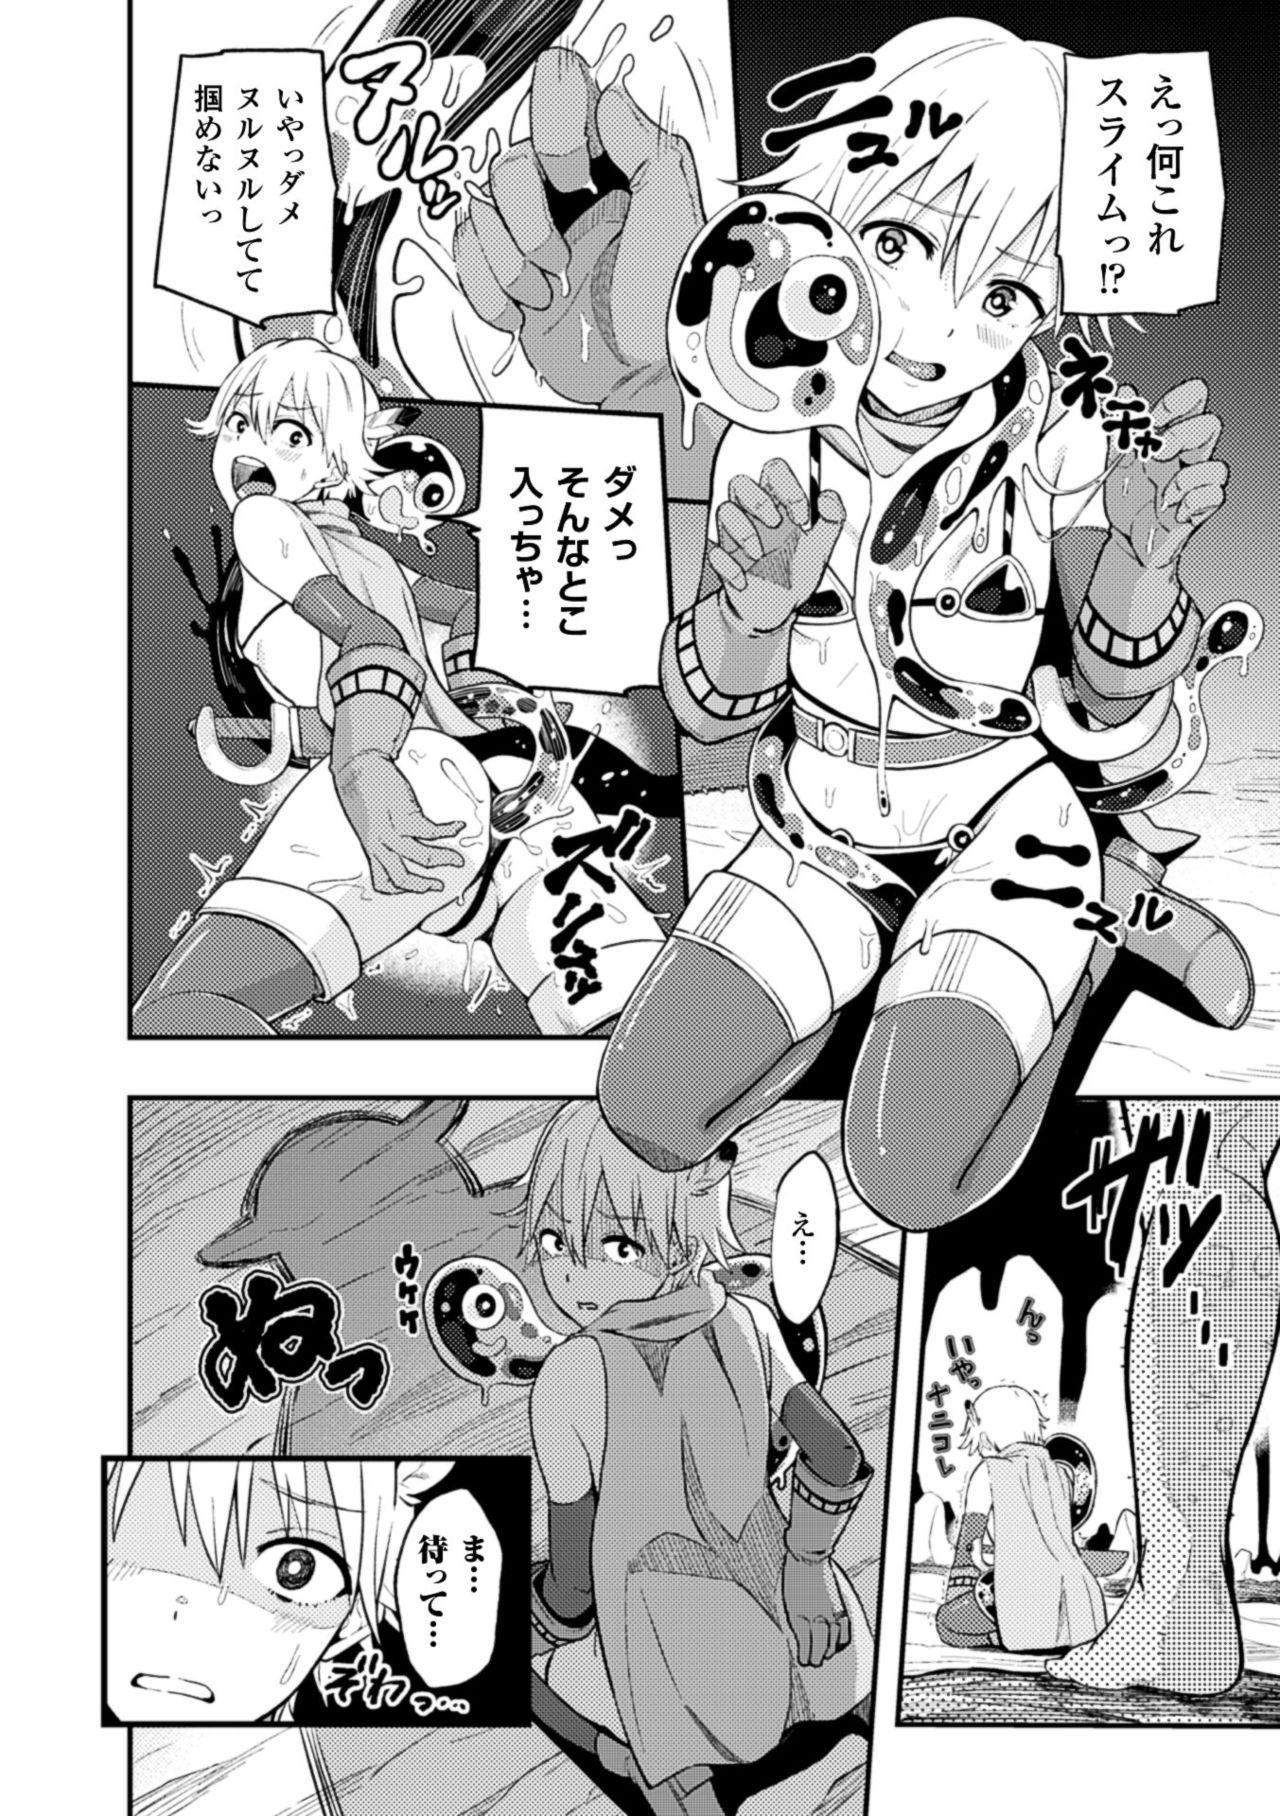 Work 2D Comic Magazine Kairaku Meikyuu Dungeon ni Kodama suru Mesu no Kyousei Vol. 2 Bwc - Page 8